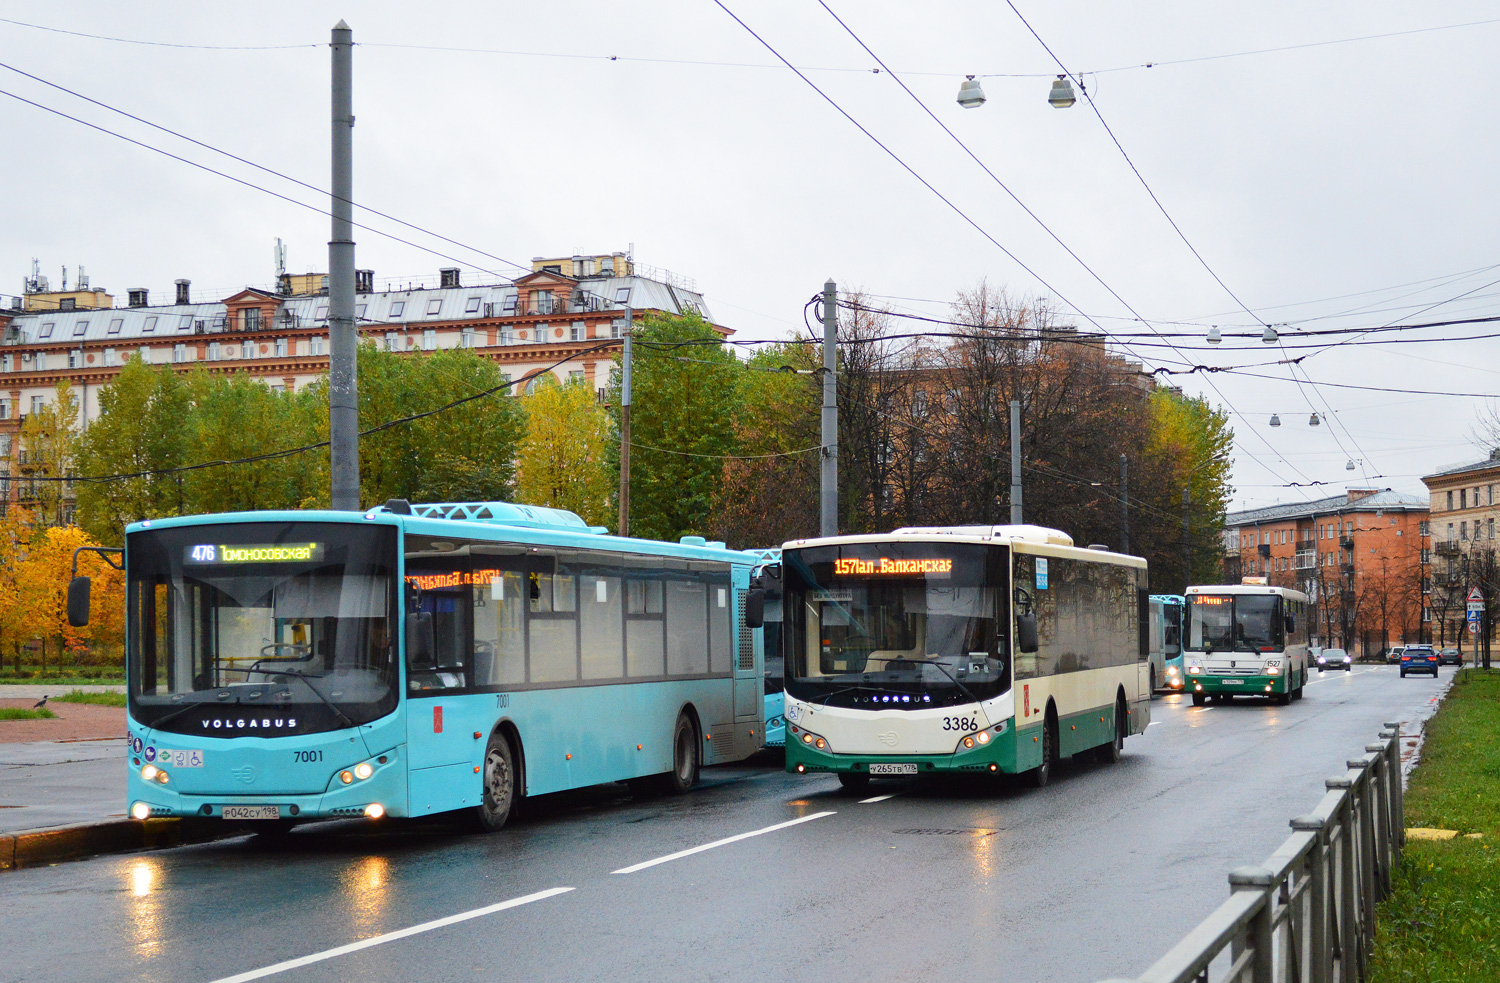 Sankt Petersburg, Volgabus-5270.G2 (LNG) Nr 7001; Sankt Petersburg, Volgabus-5270.00 Nr 3386